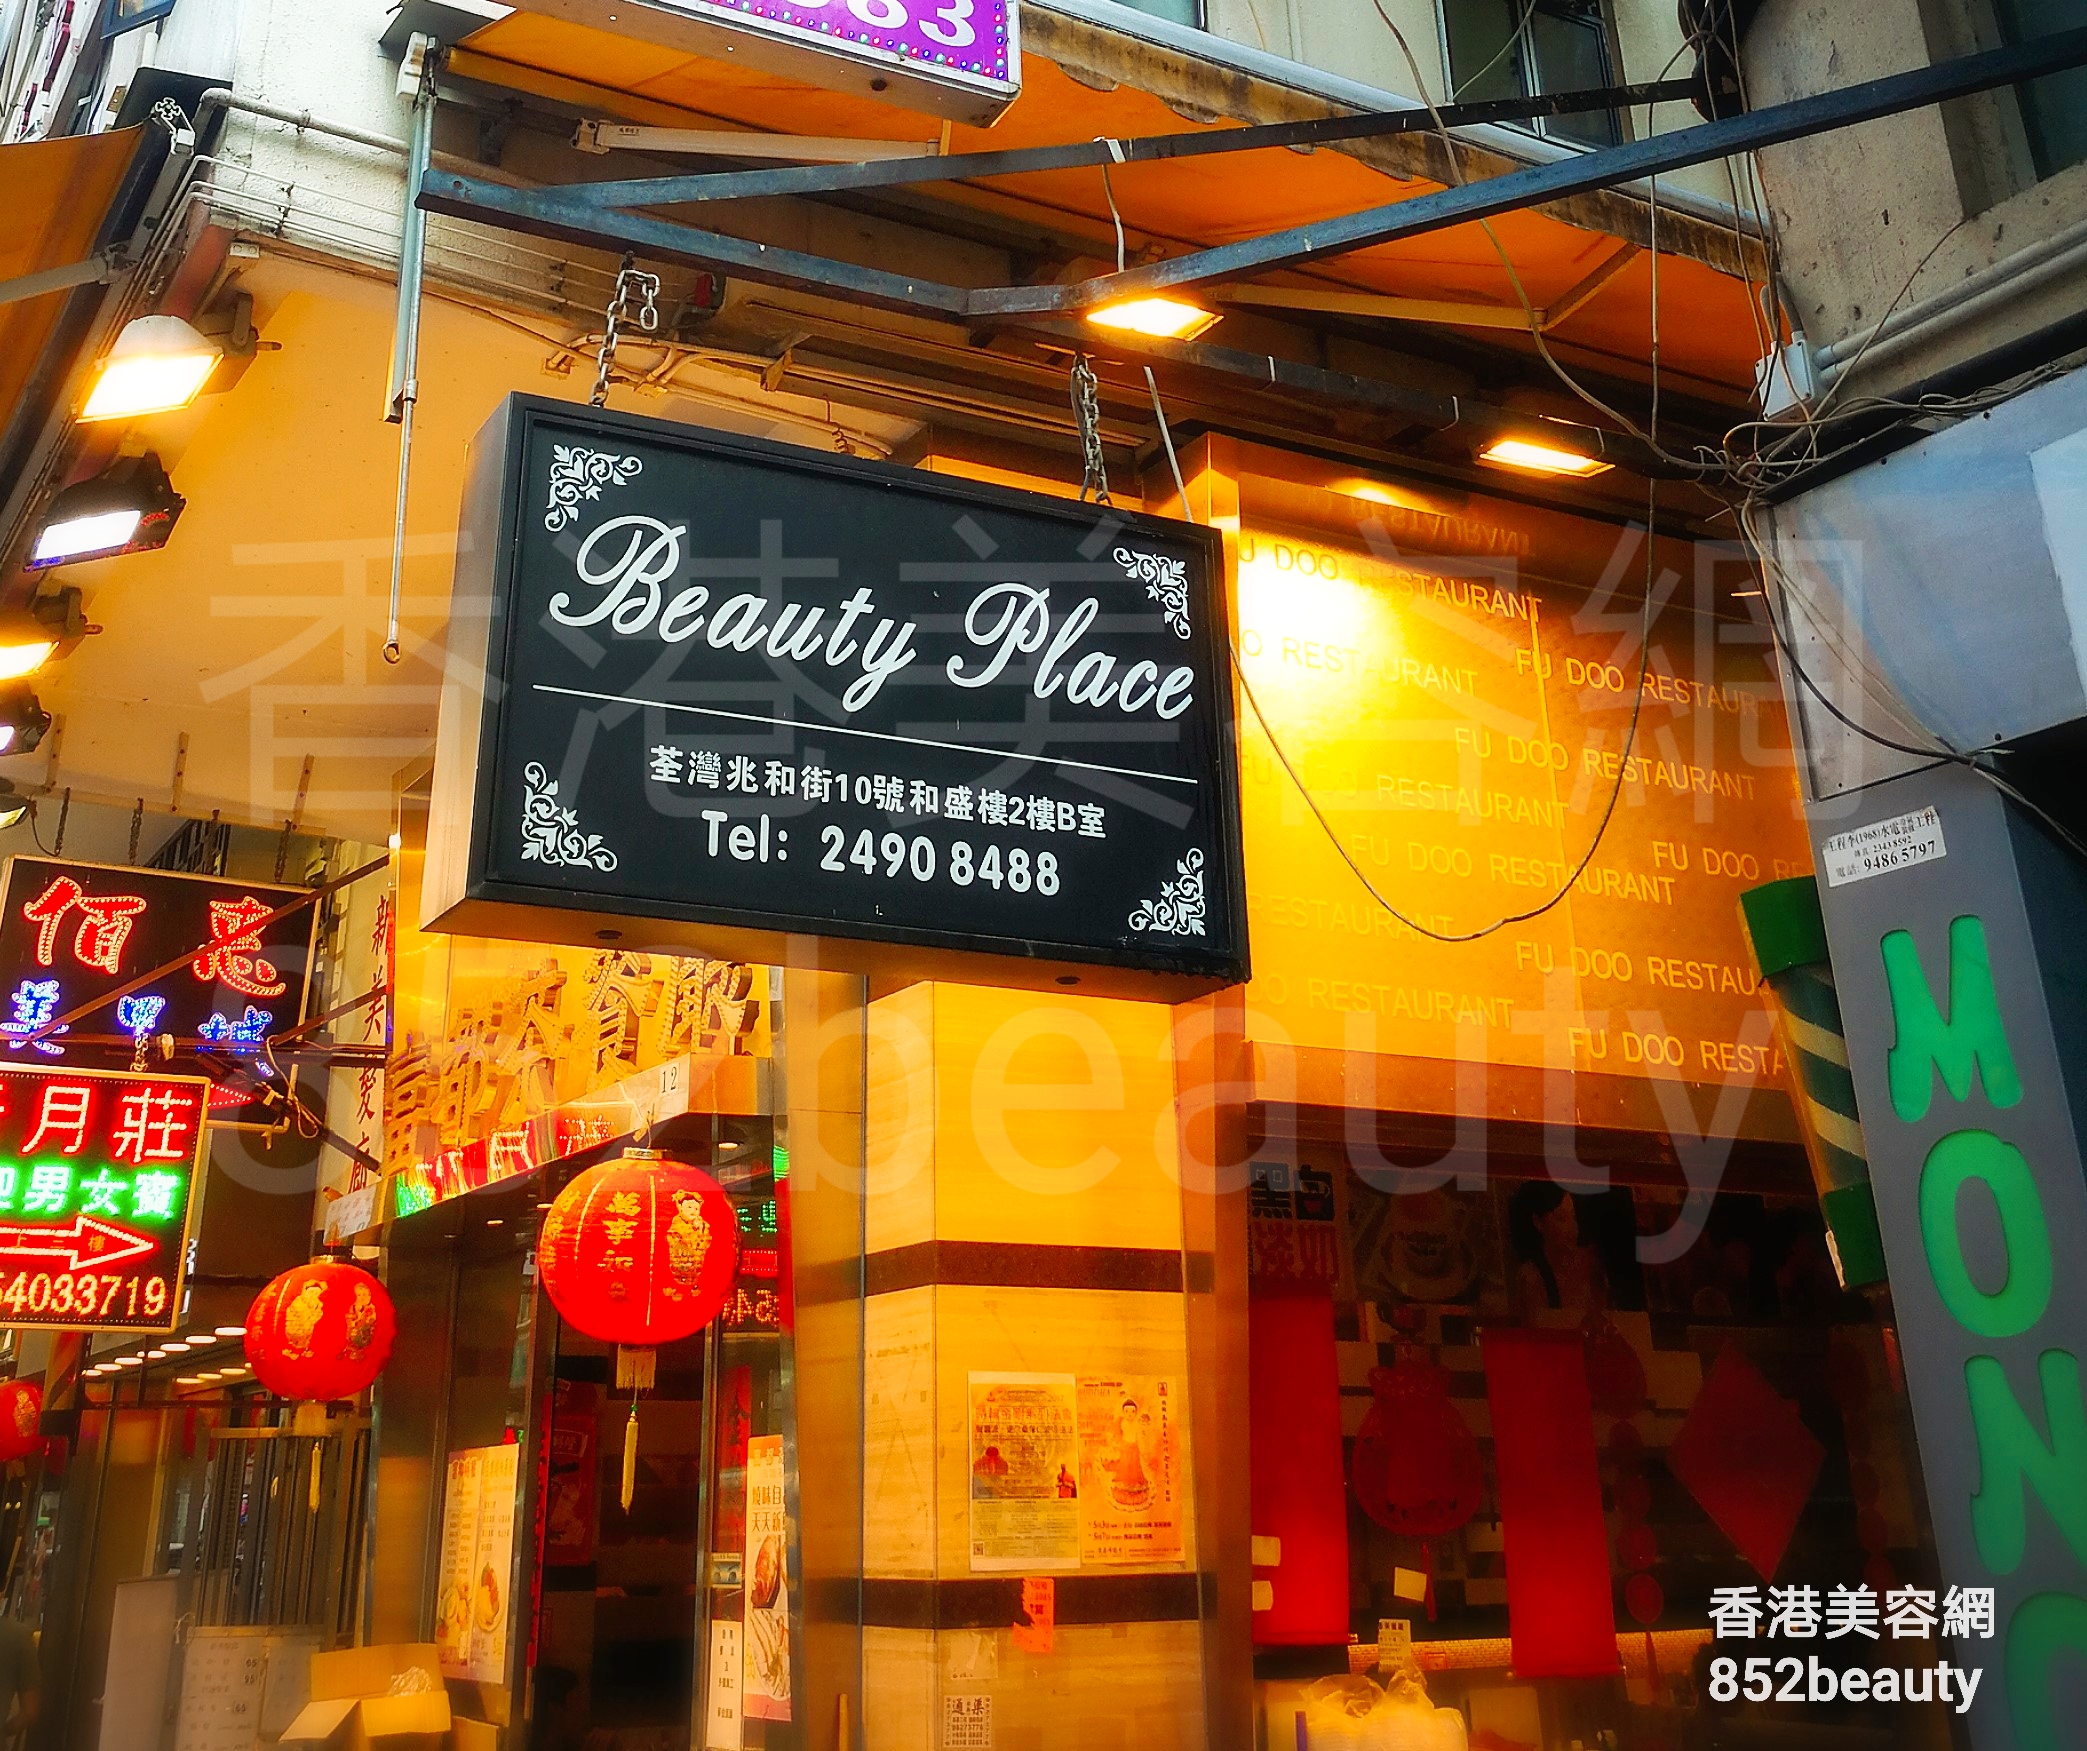 香港美容網 Hong Kong Beauty Salon 美容院 / 美容師: Beauty Place